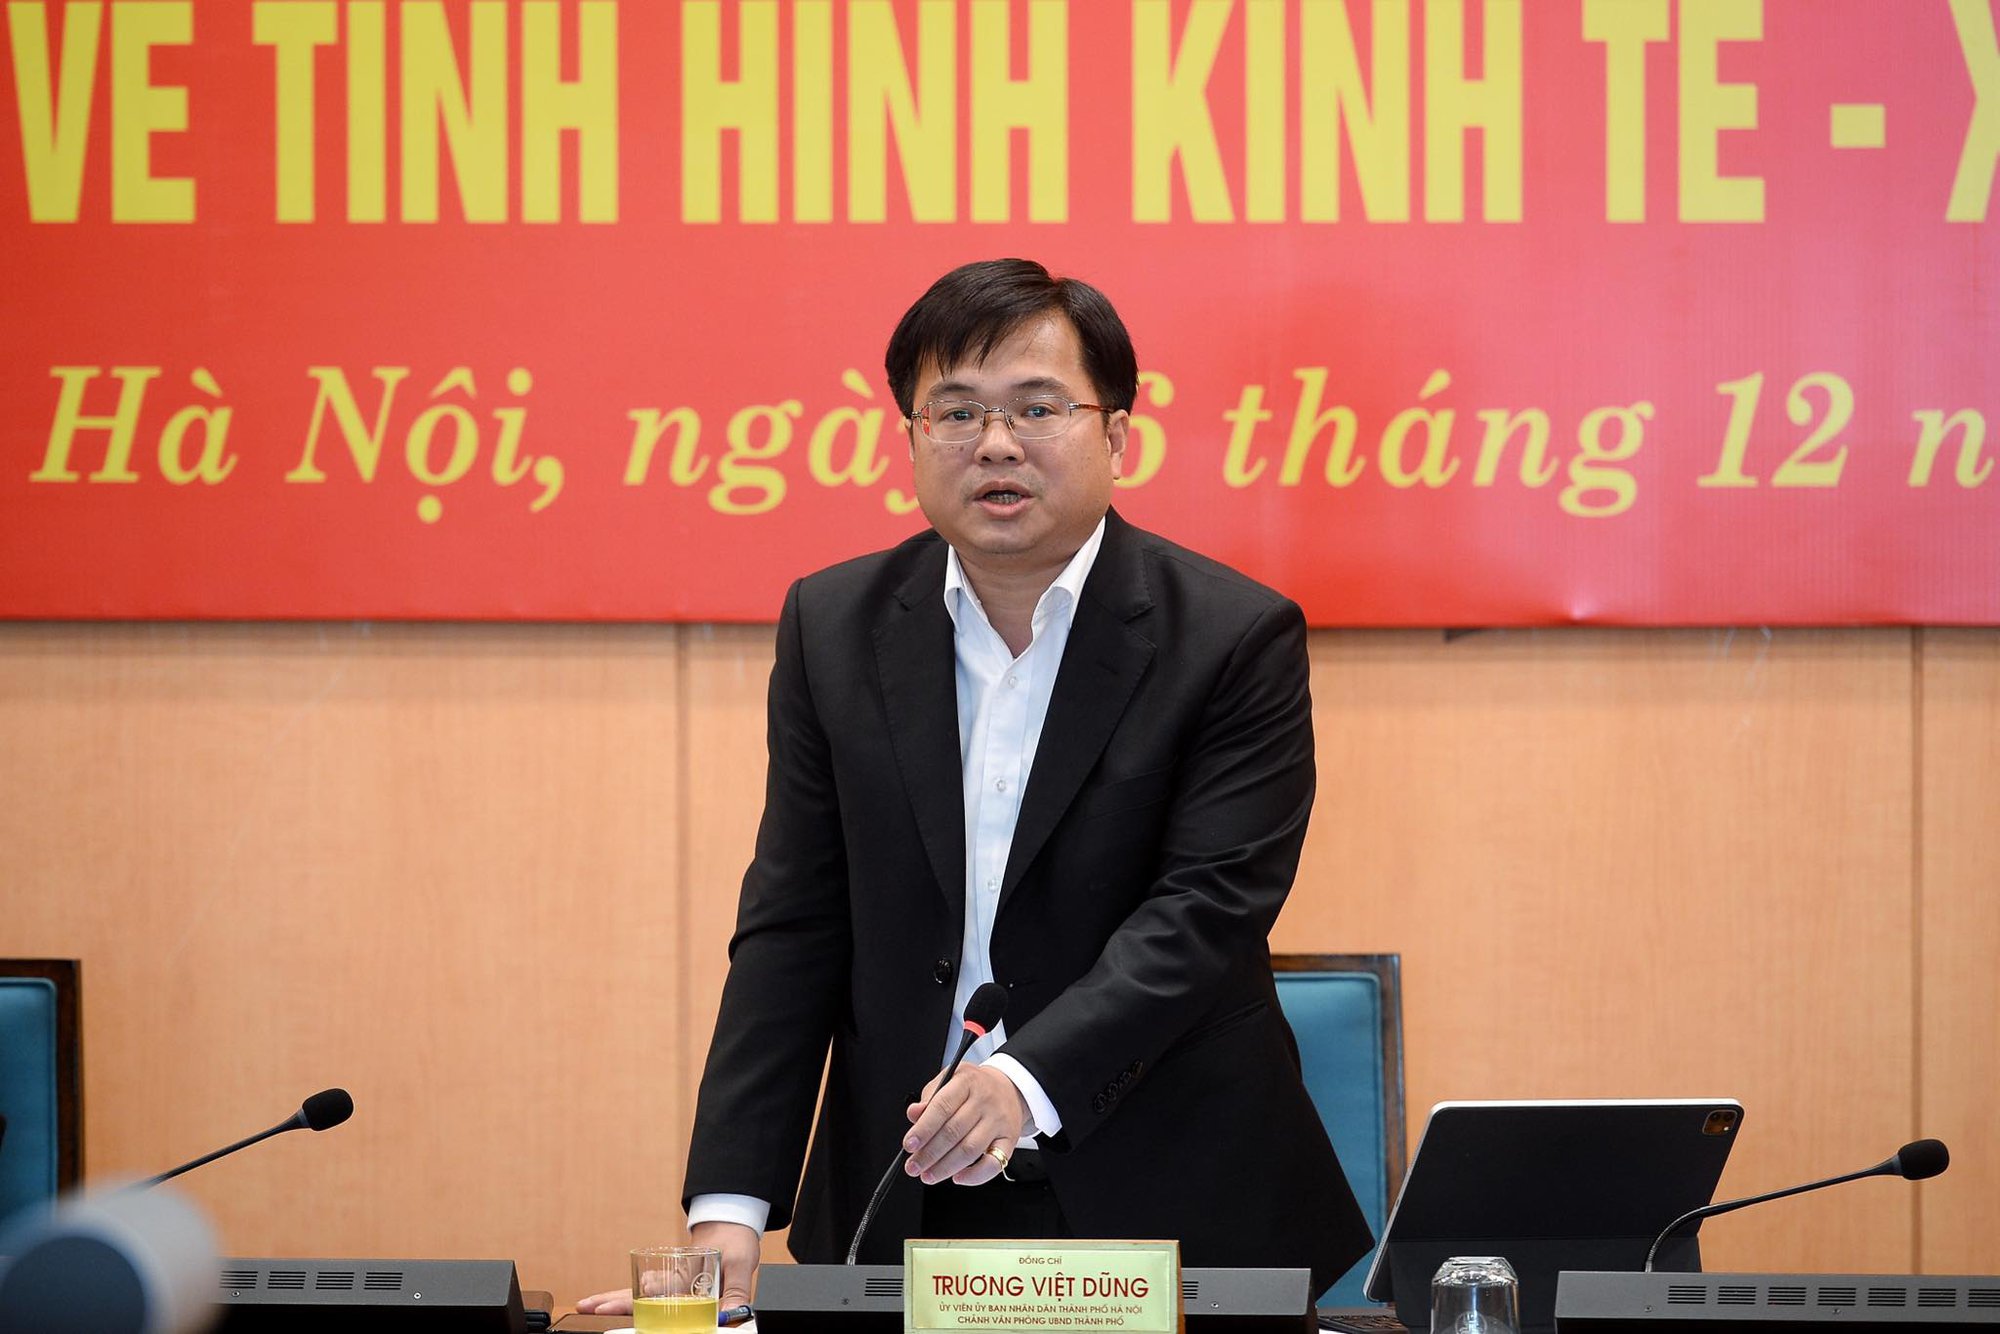 Chủ tịch Hà Nội: Xử nghiêm vụ 3,5 ha đất Đầm Bông biến mất Báo Người Lao Động phản ánh - Ảnh 1.